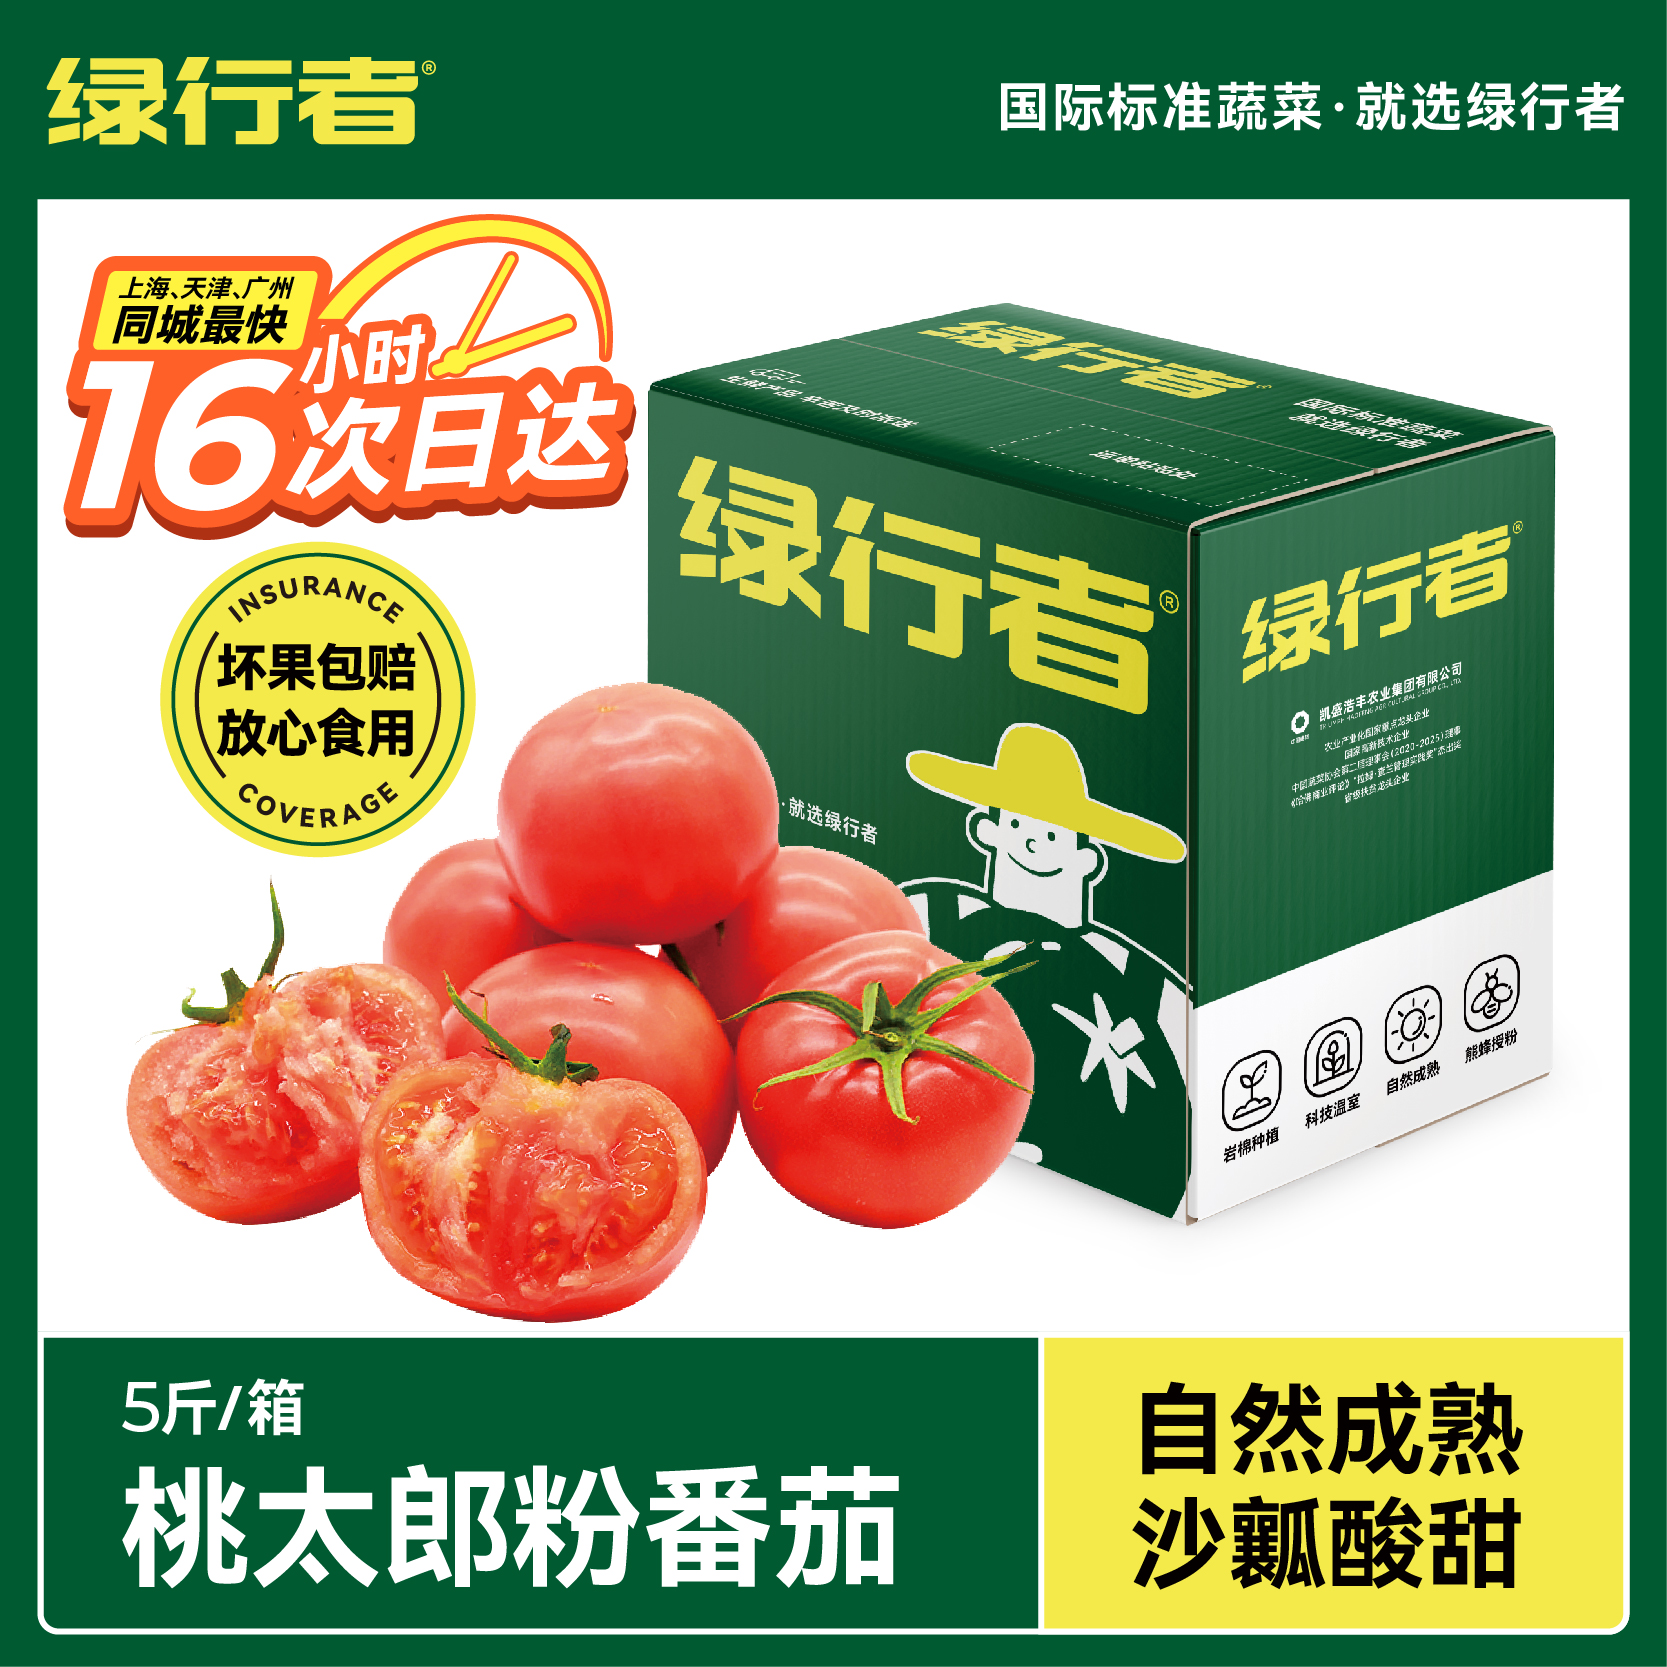 【胡可推荐】桃太郎番茄新鲜自然熟柿